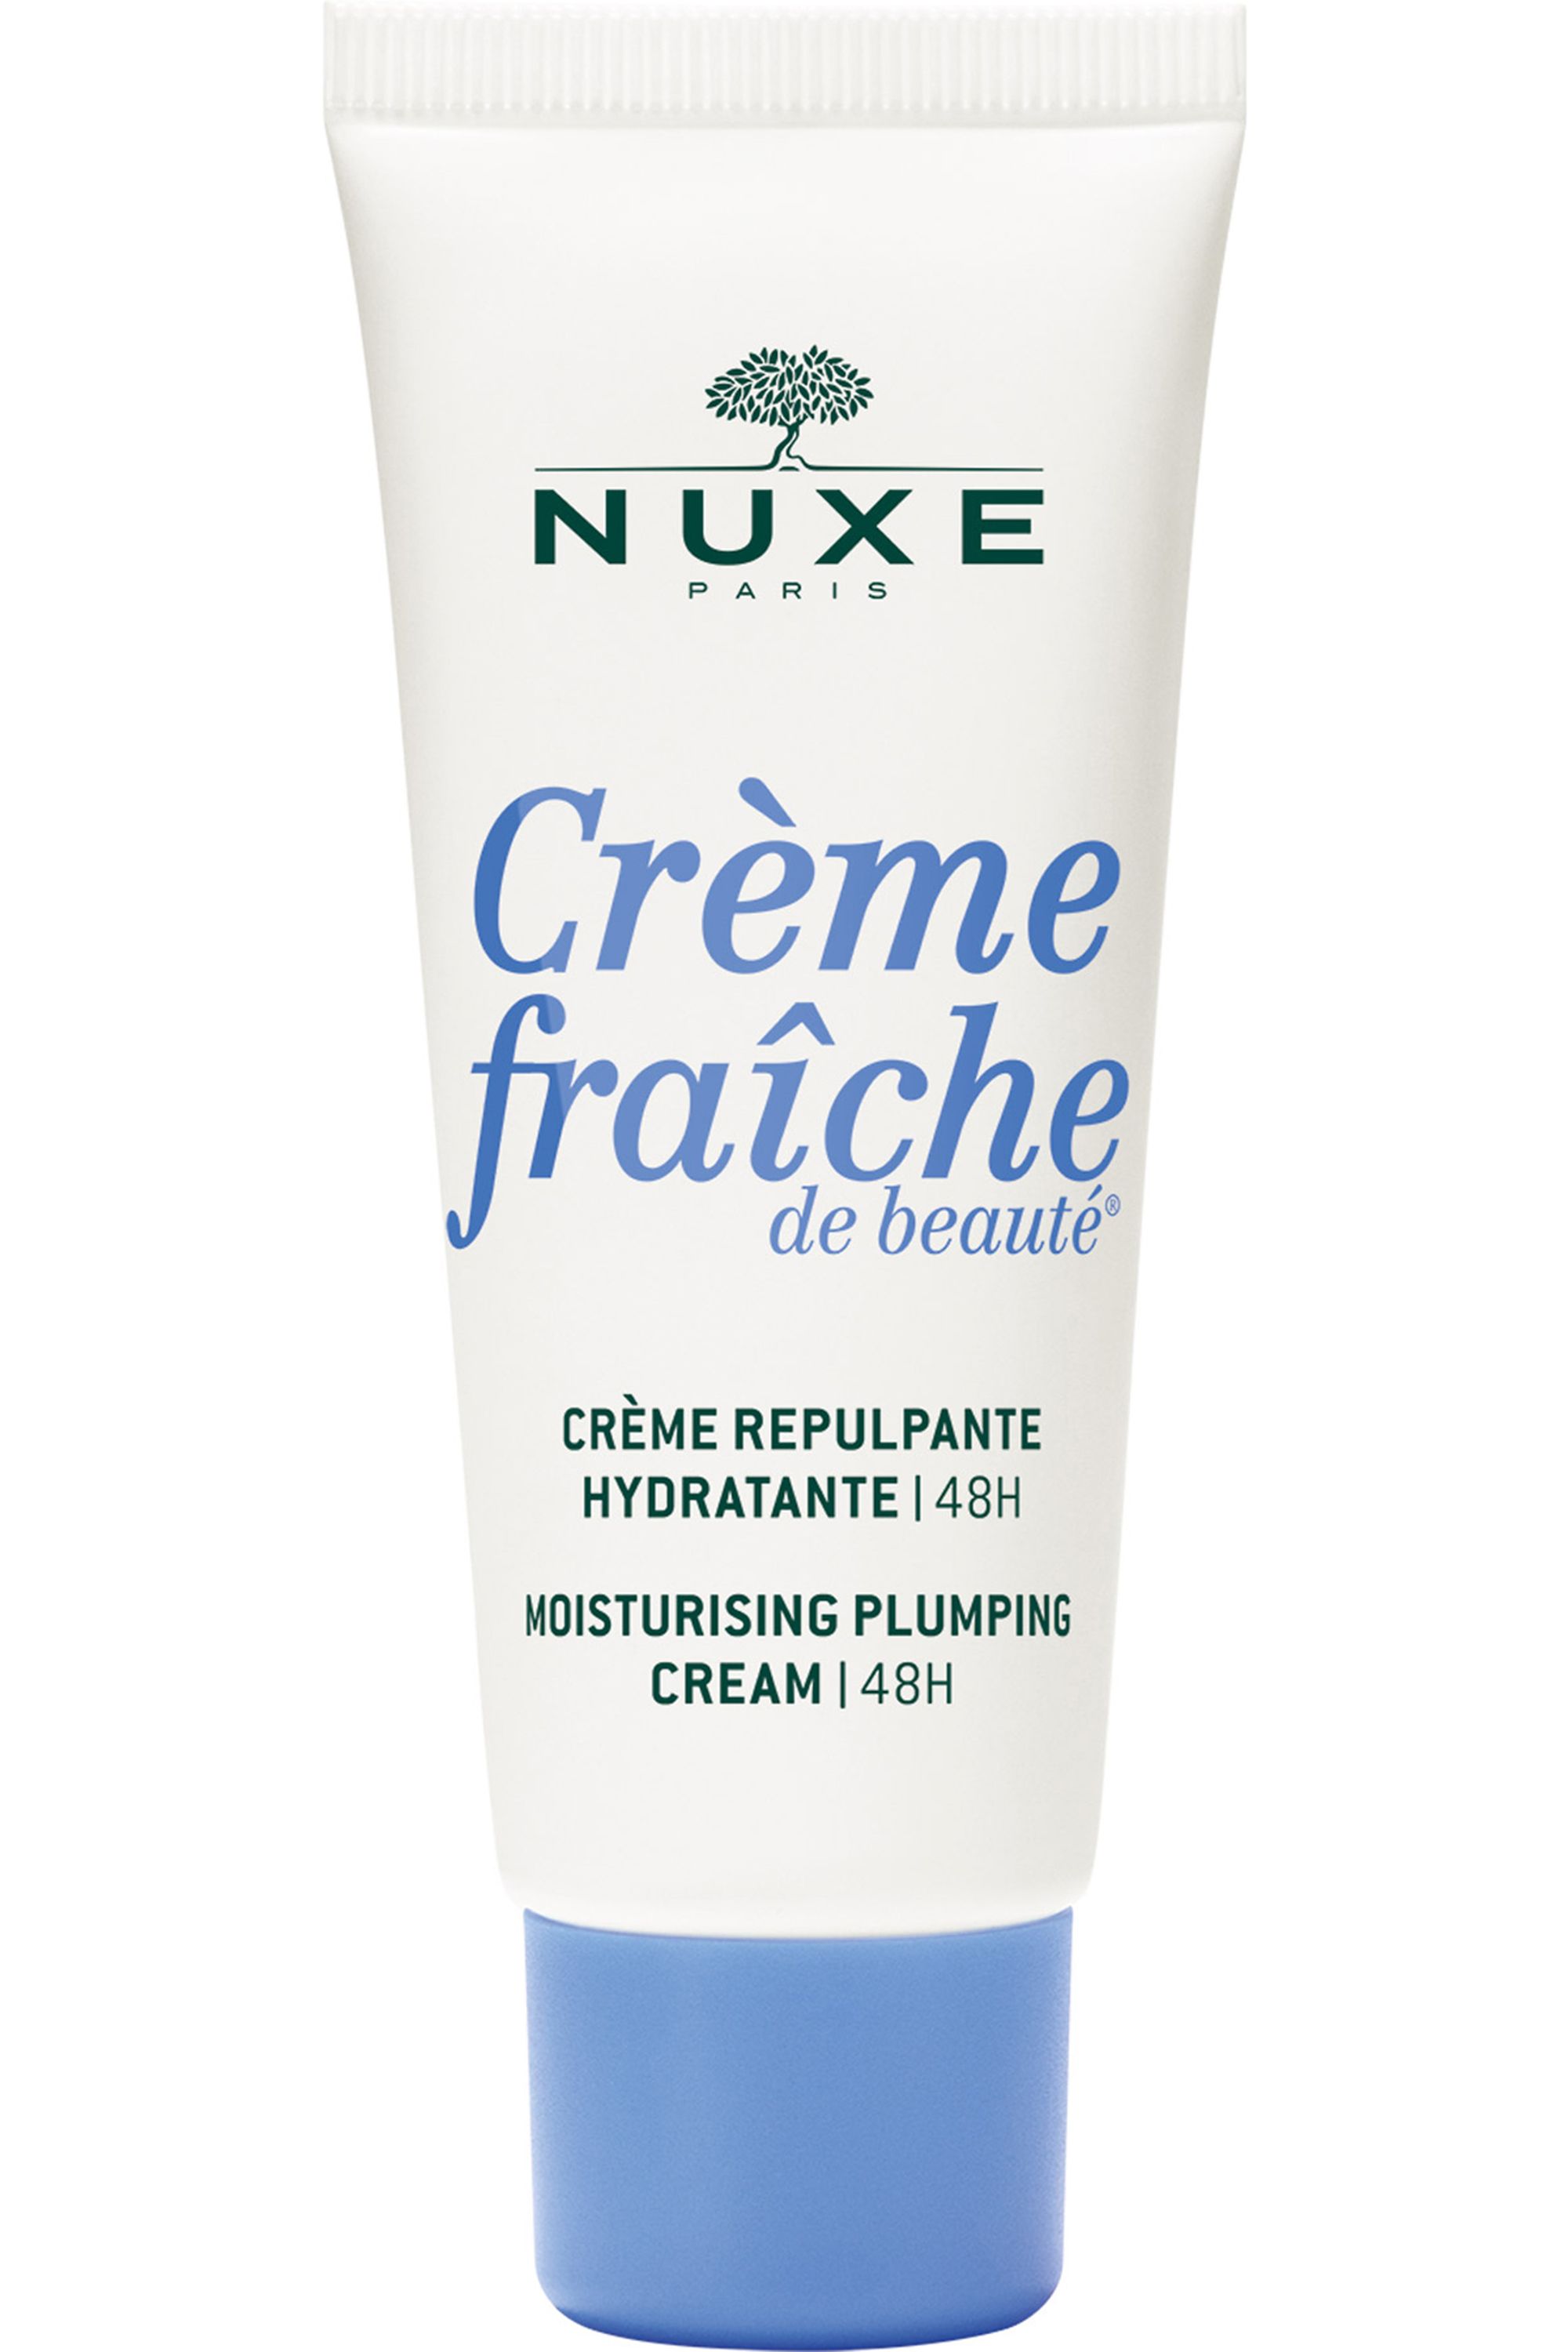 Nuxe - Crème repulpante hydratante 48h Crème fraîche de beauté